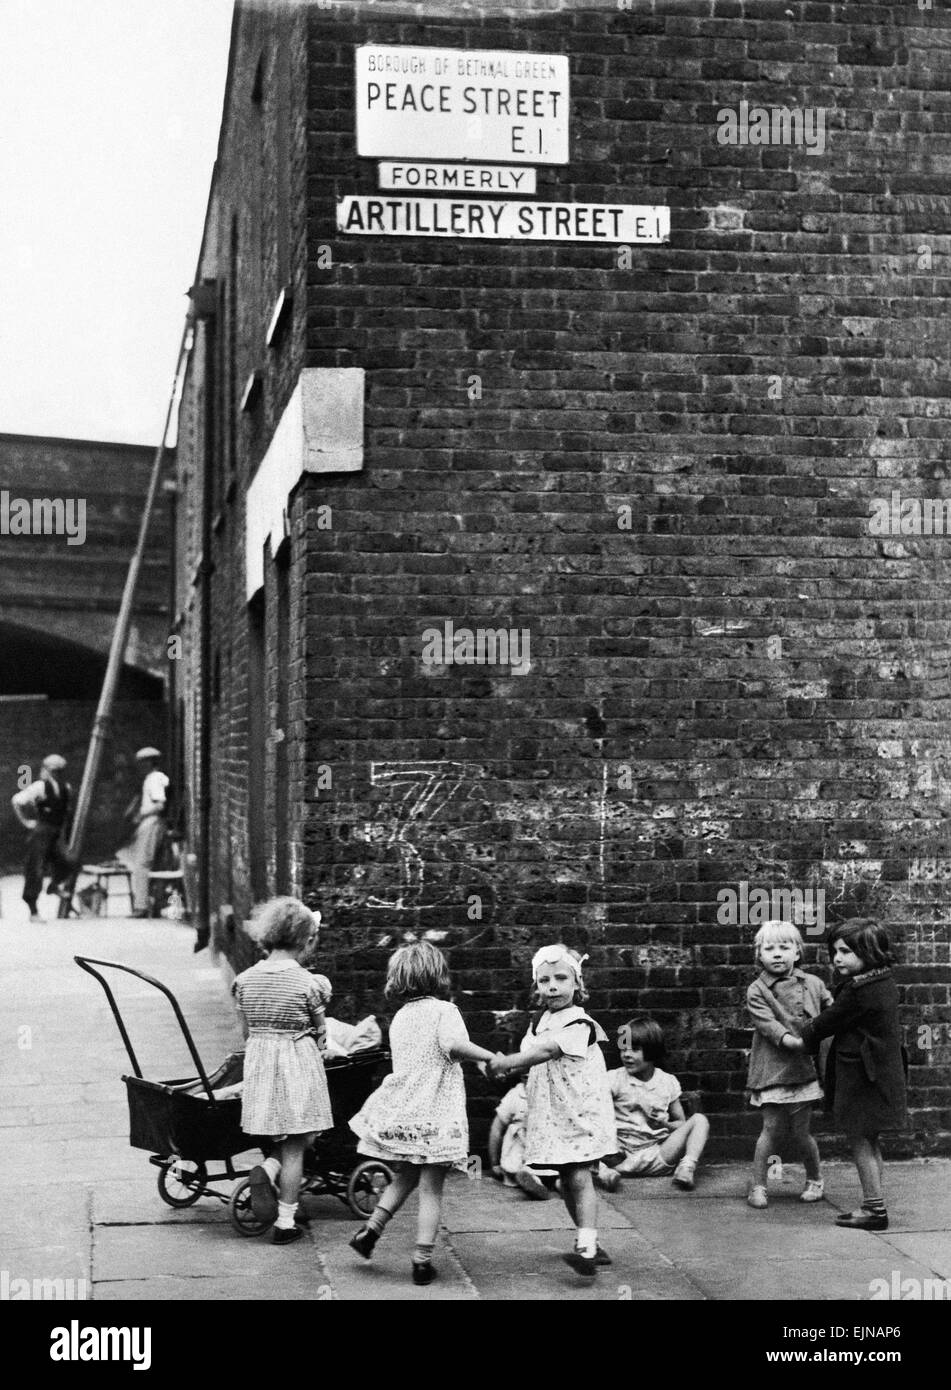 Junge Mädchen, Mütter mit ihren Puppen und Spielzeug Kinderwagen auf der Ecke des Friedens, Straße früher Artillerie, in Bethnal Green, East London zu spielen. 24. Juli 1939. Stockfoto